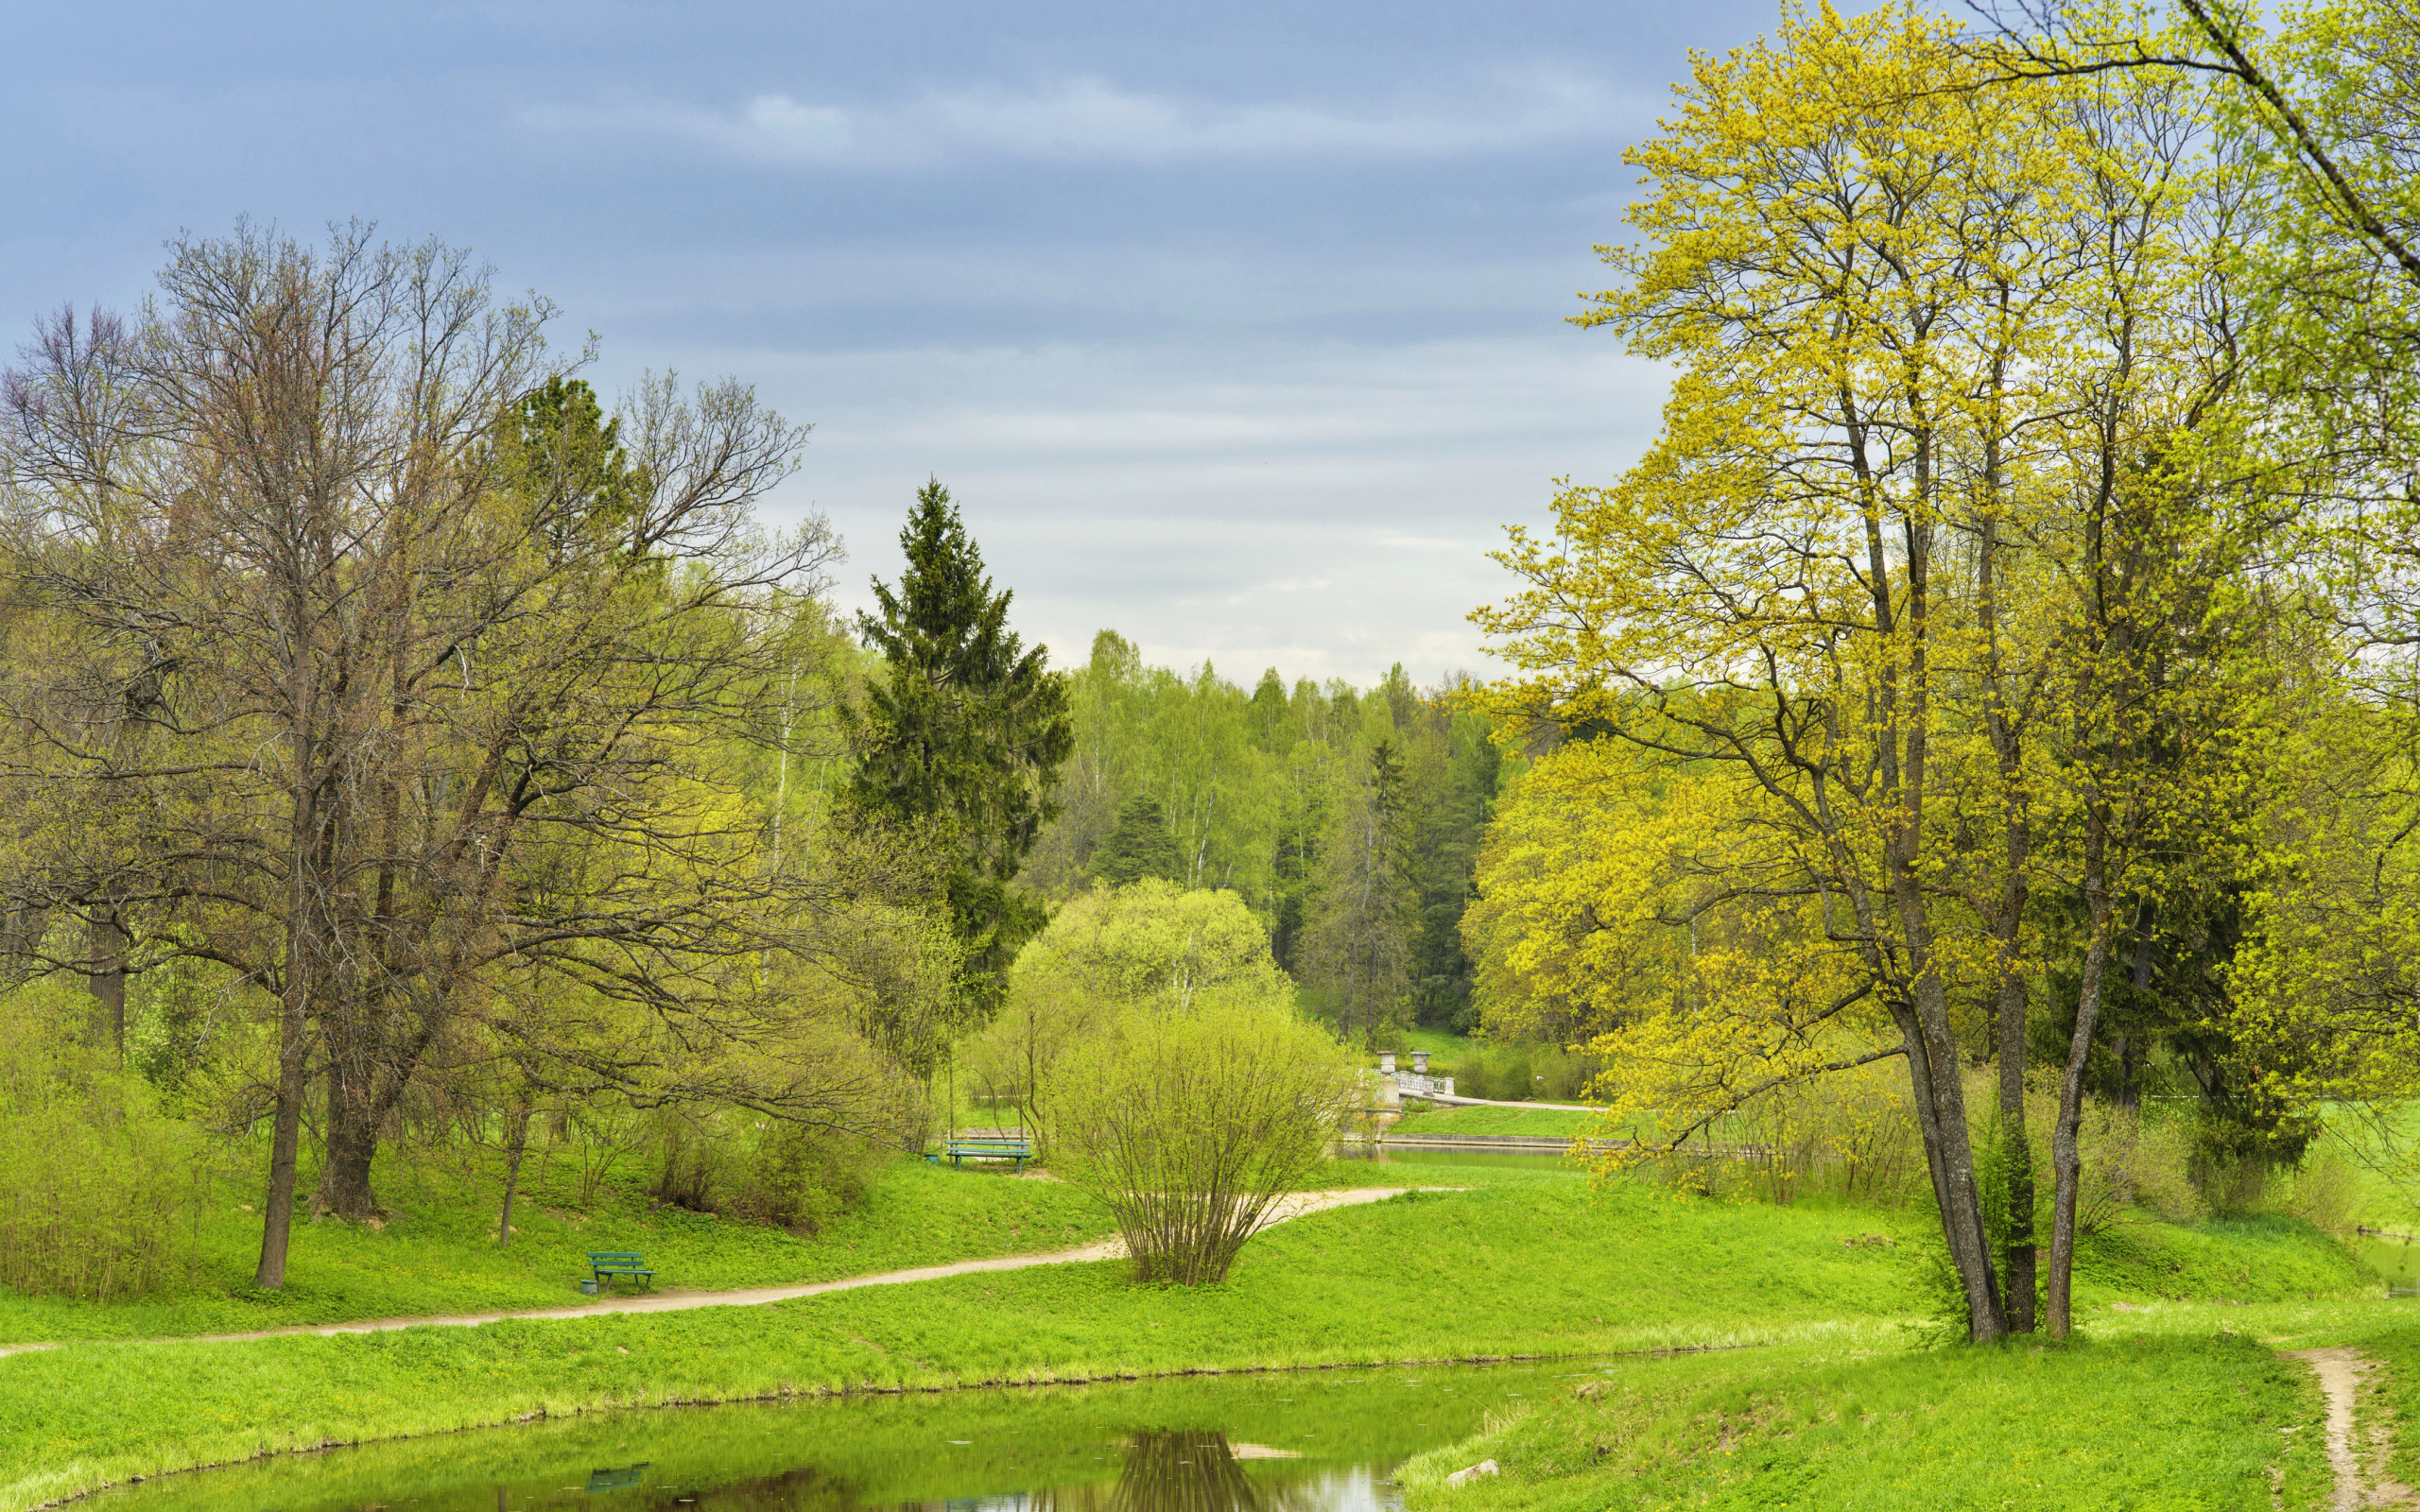 Деревья с зелеными листьями под пасмурным небом весной 